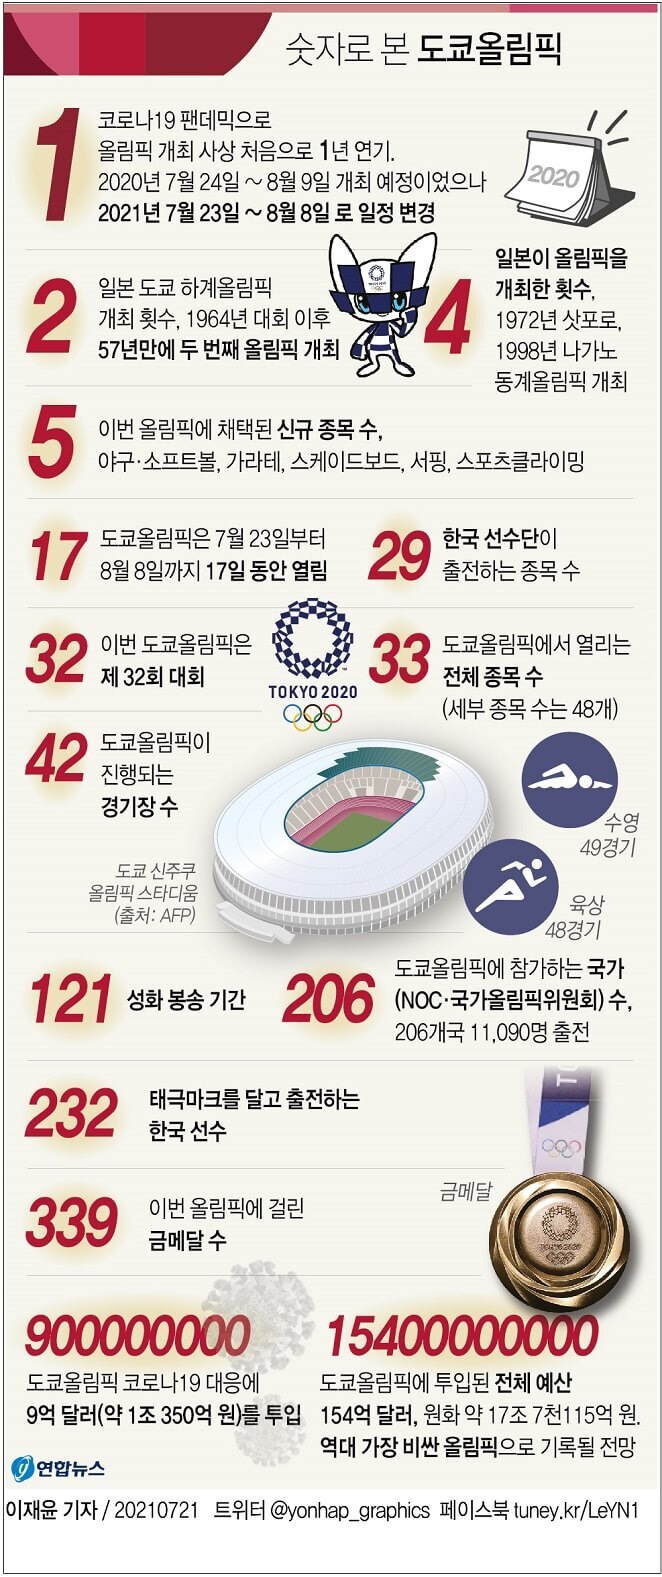 [그래픽] 도쿄올림픽 23일 개막...한국 선수 경기 일정(22~23일)